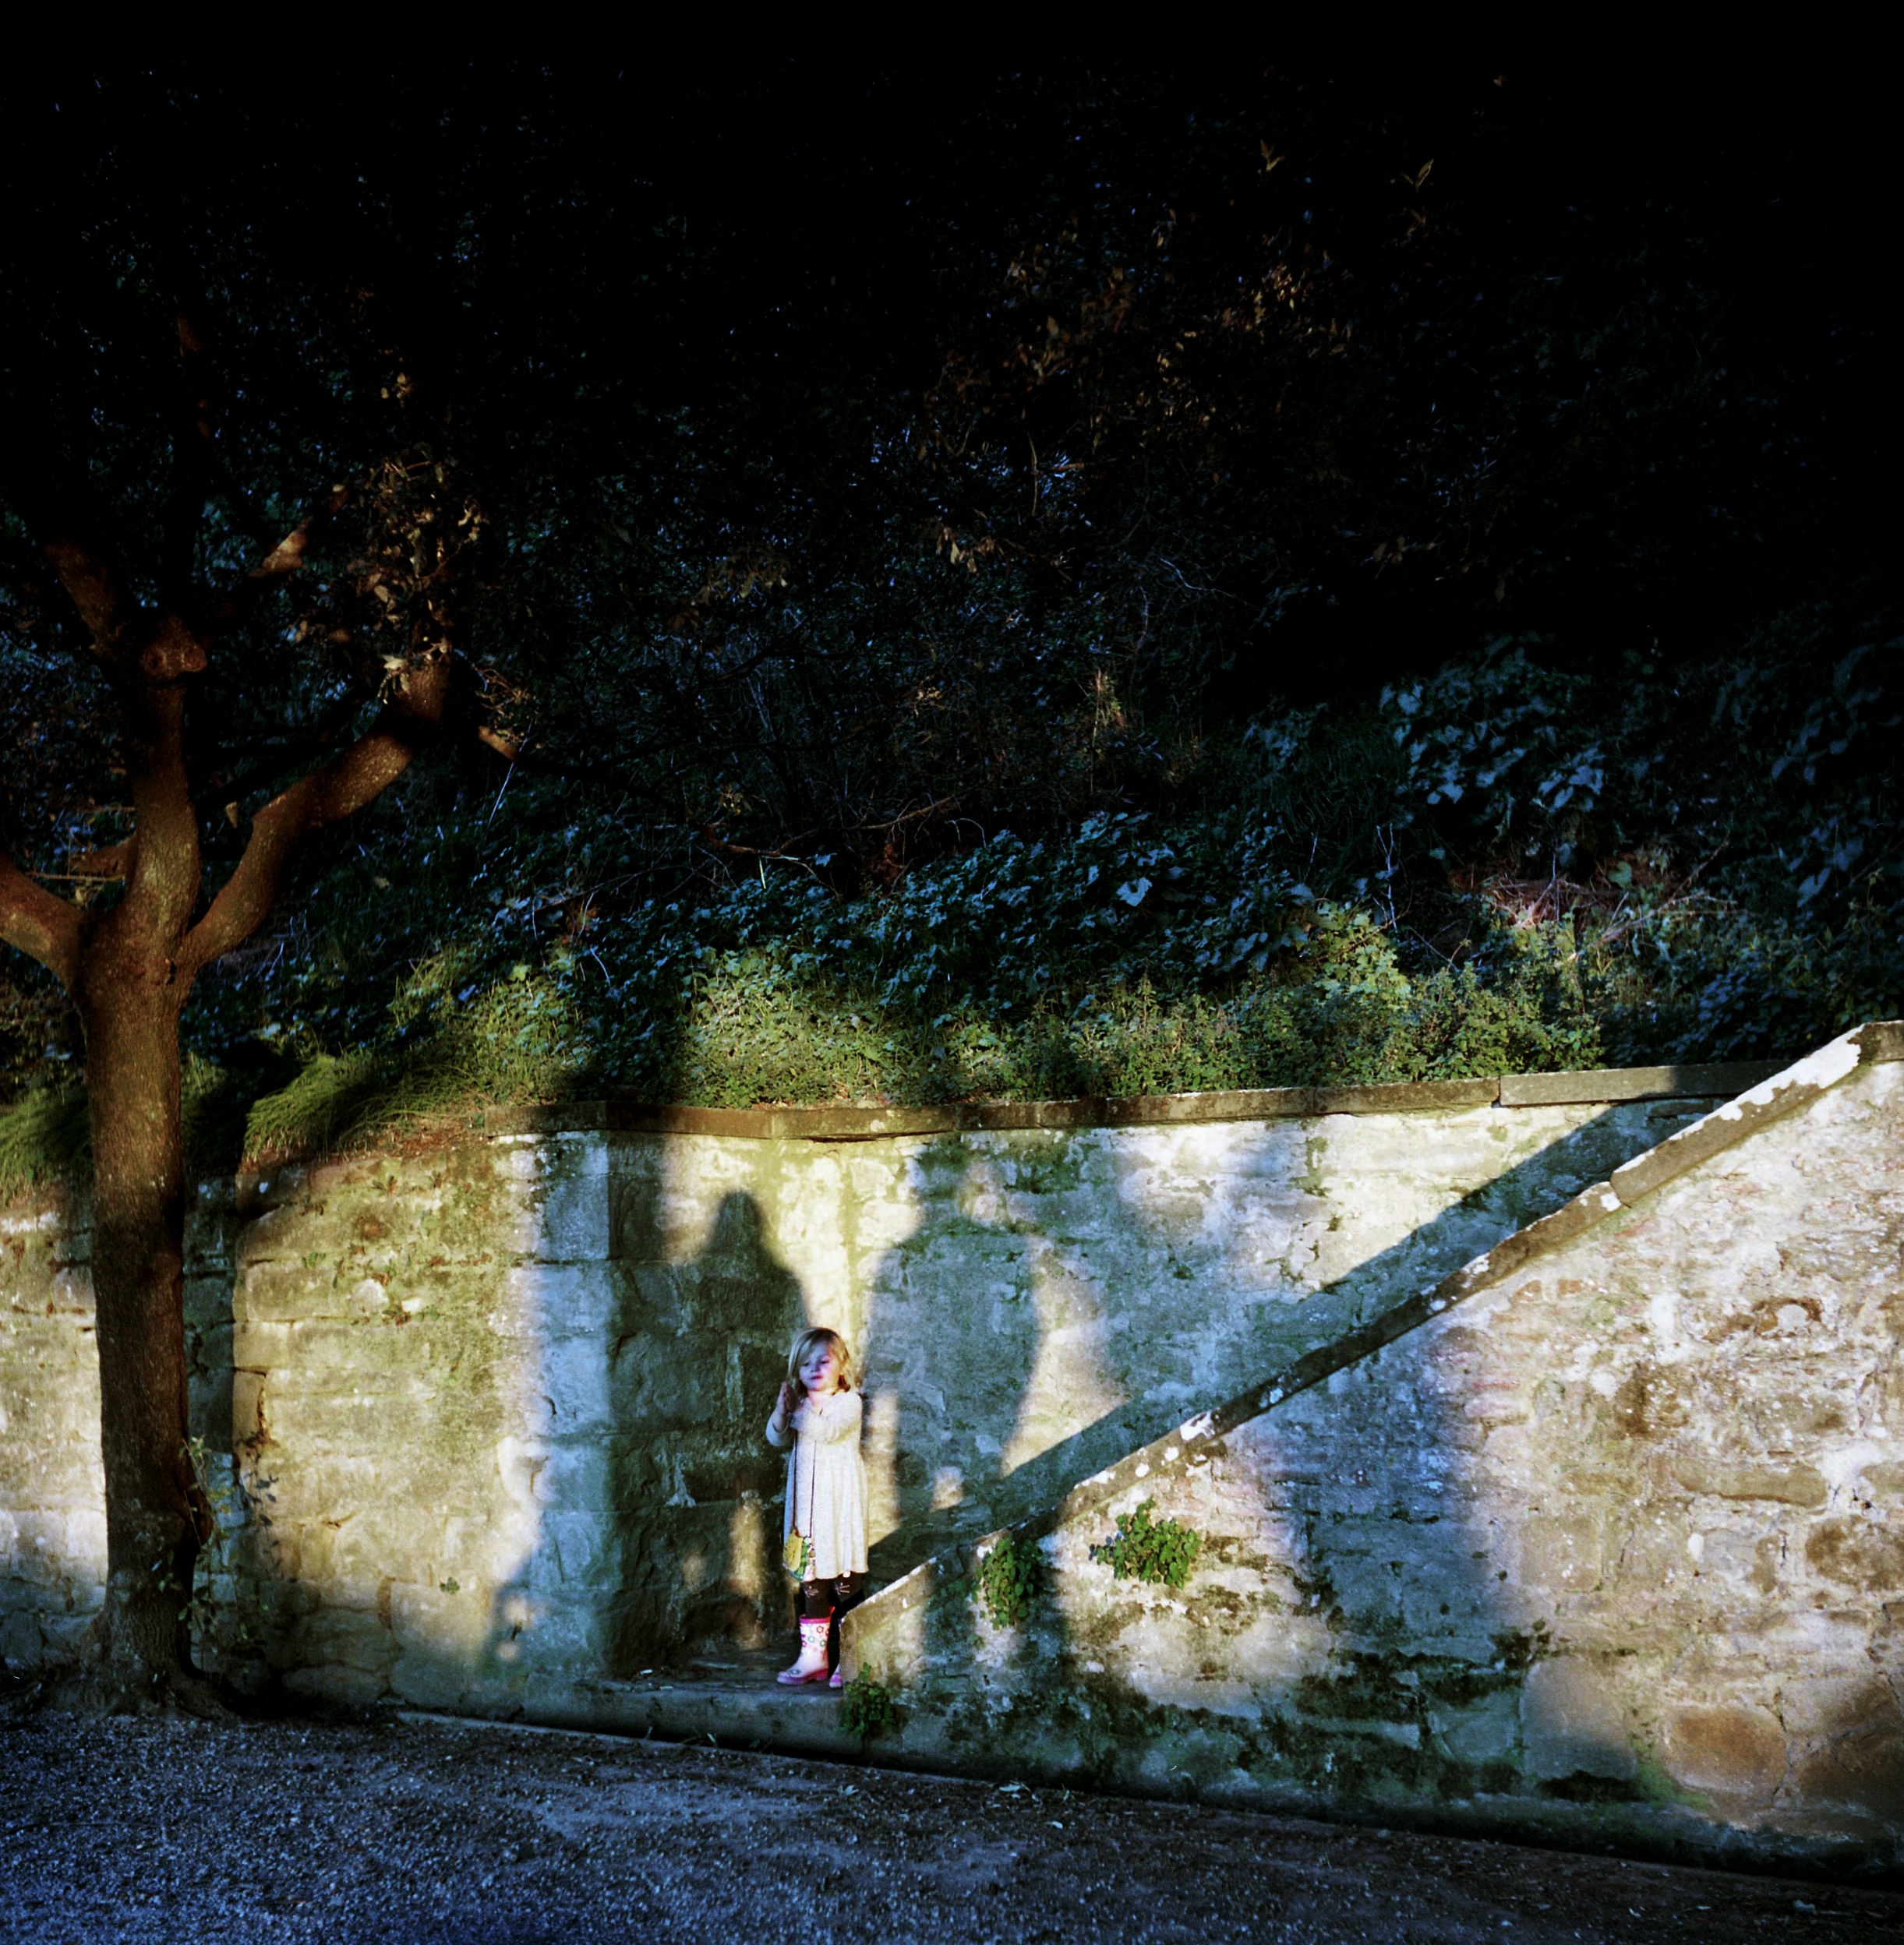  Family Shadows at dusk in the park, Cortona, Italy 